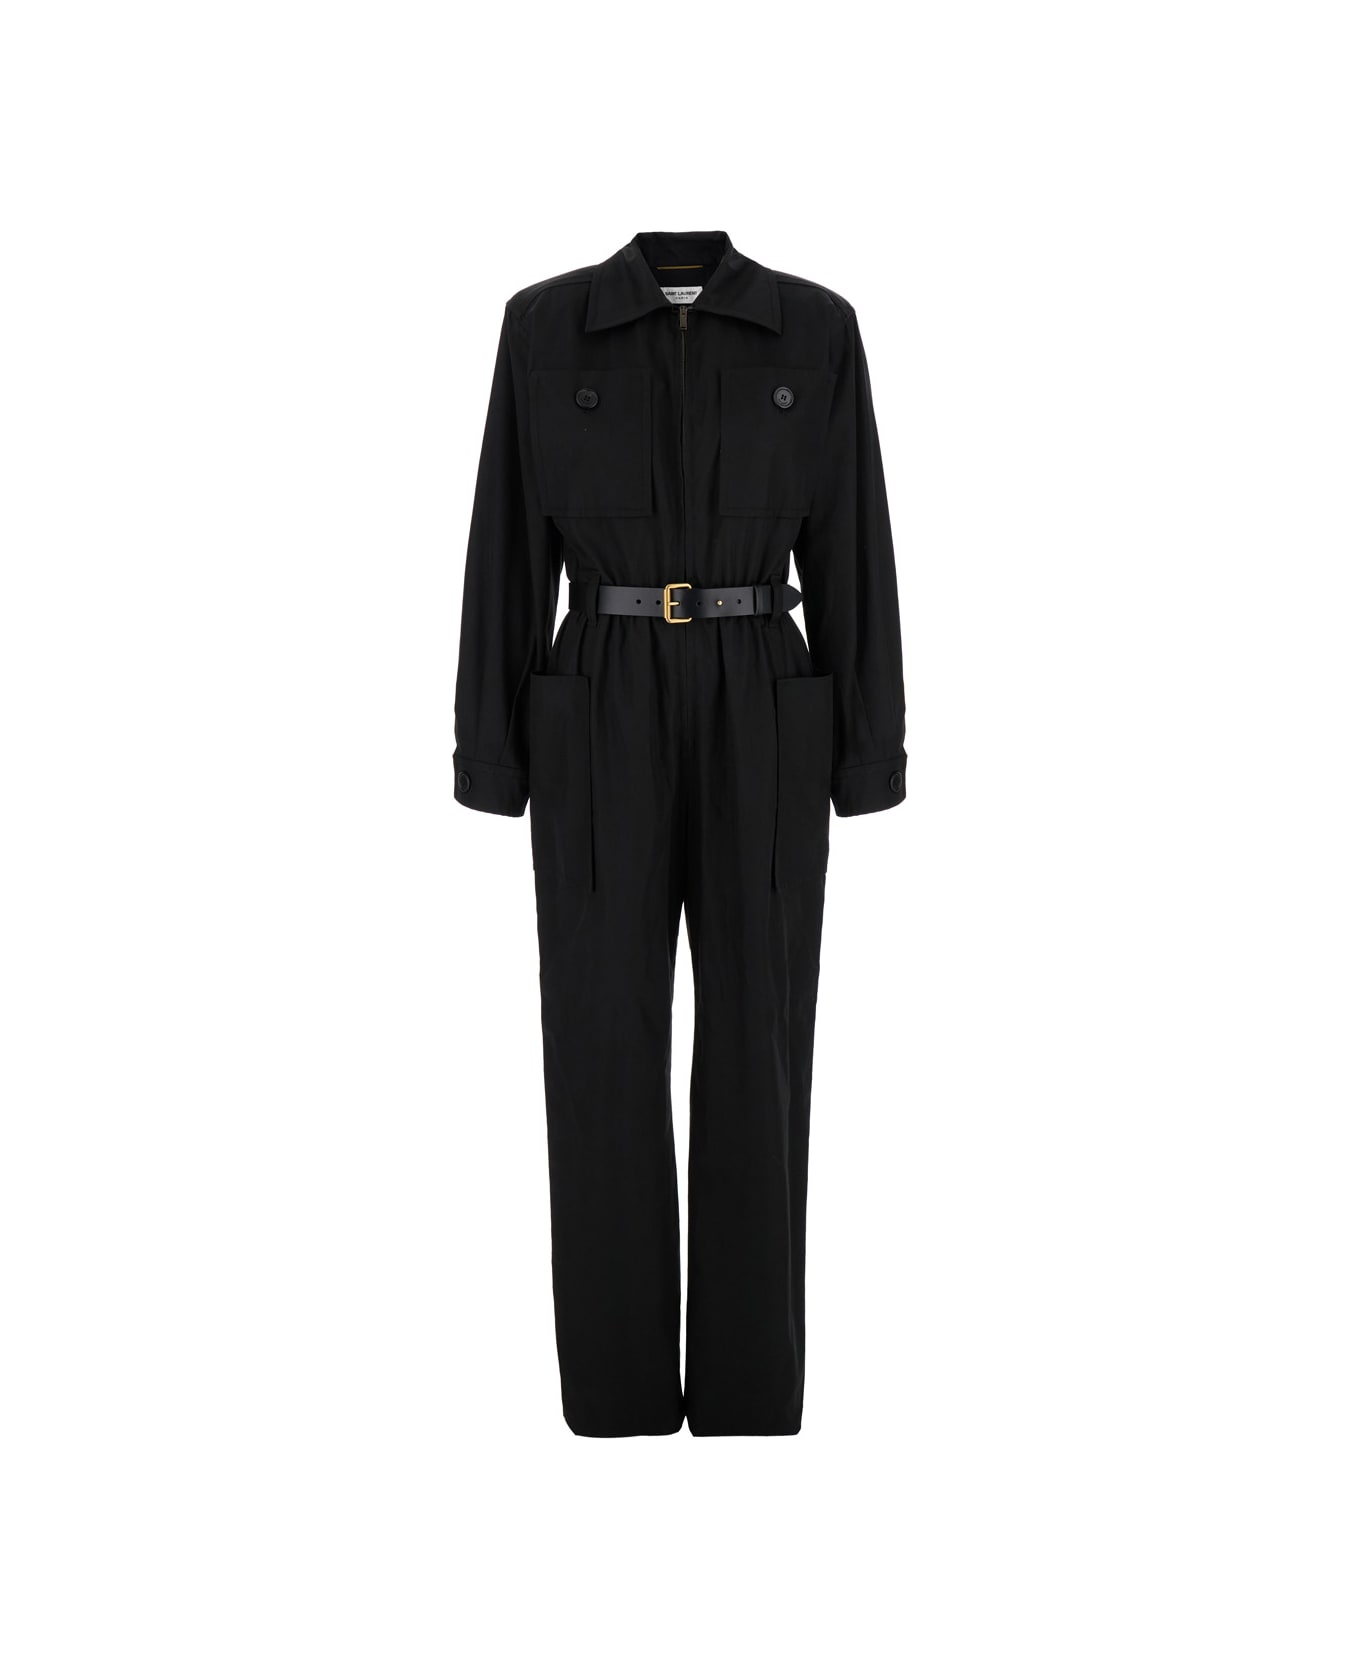 Saint Laurent Black Jumpsuit With Pockets And Belt In Cotton Woman - BLACK